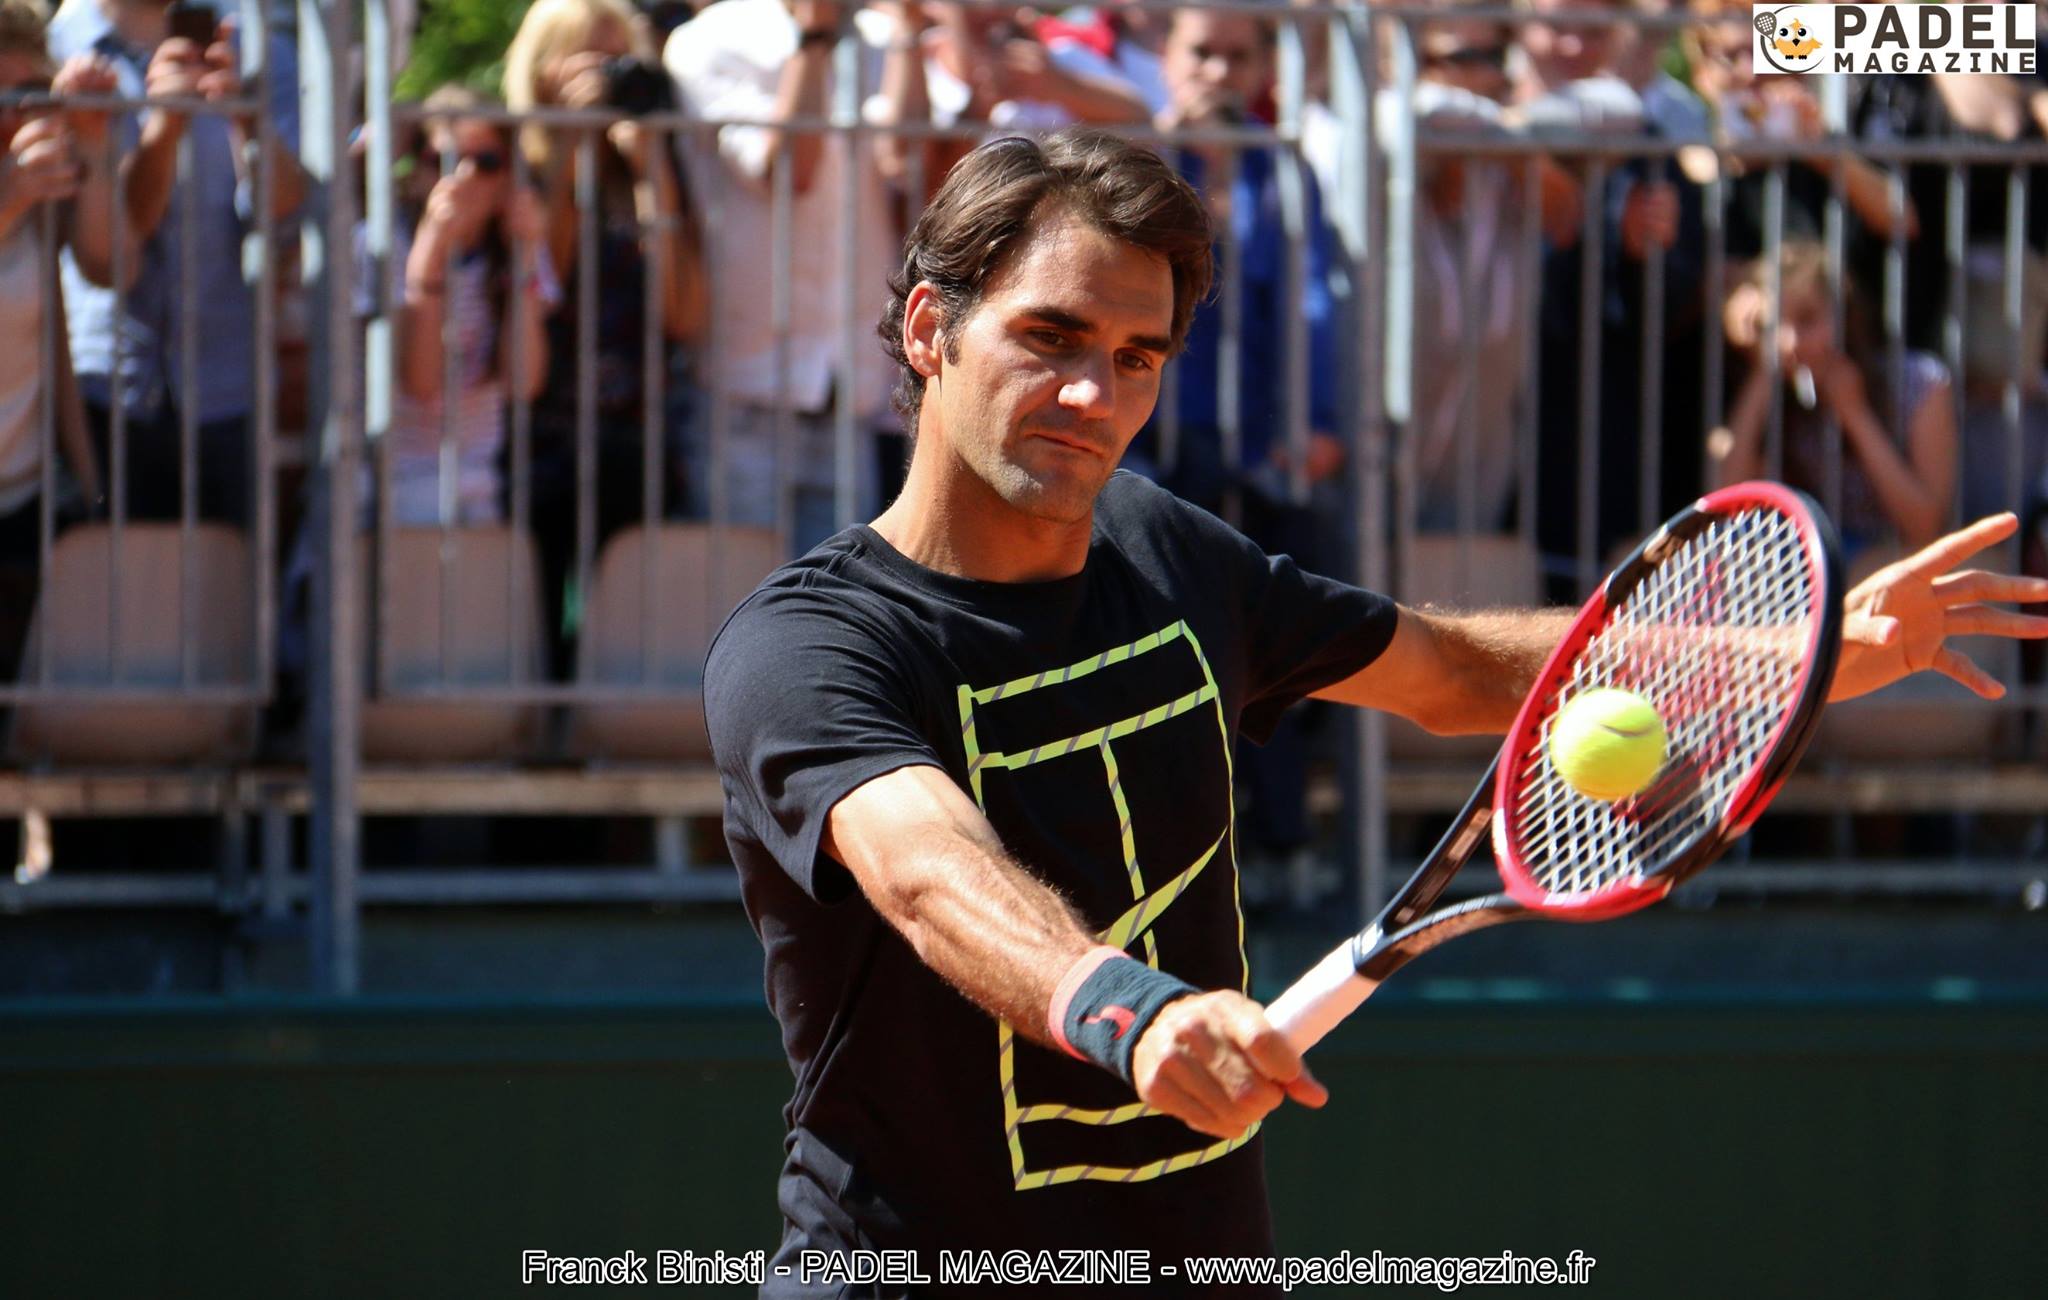 Roger Federer bei padel : Traum oder zukünftige Realität?